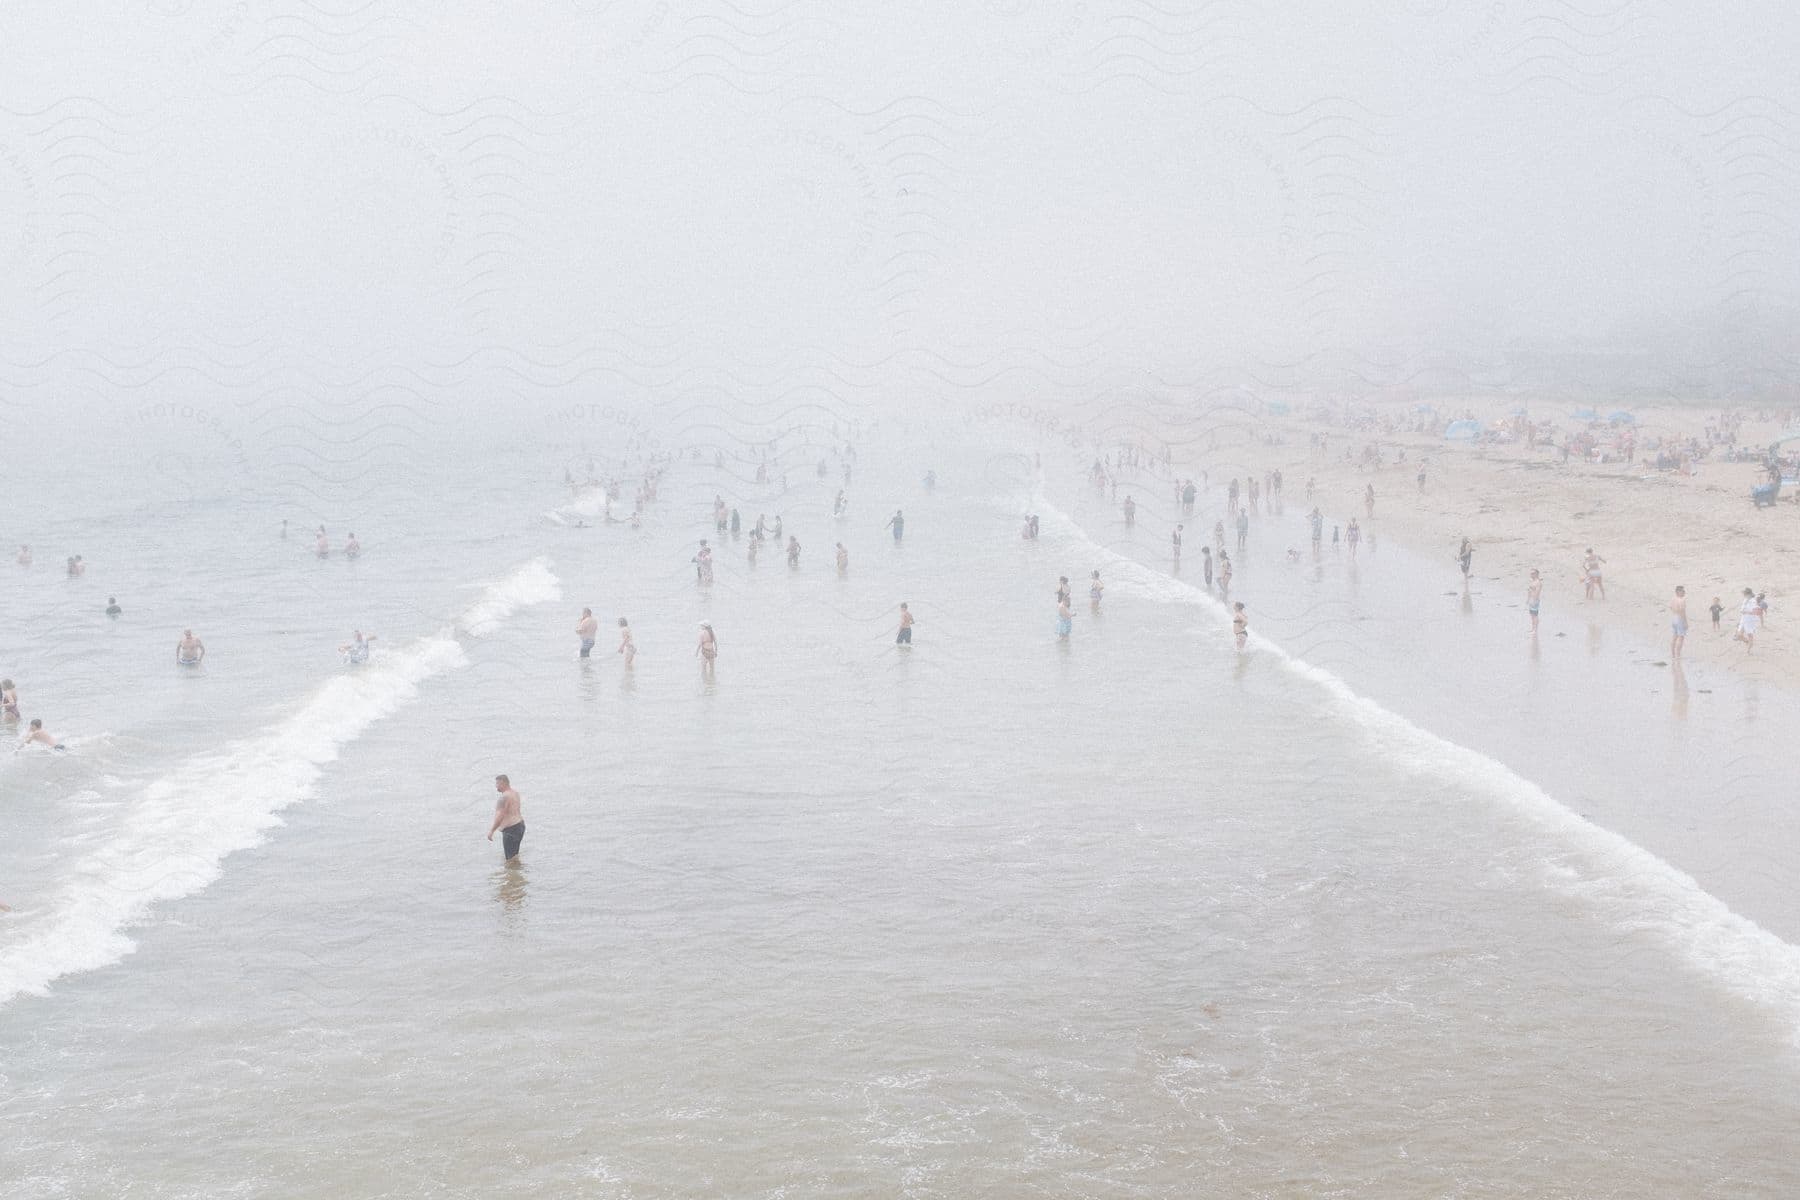 Beachgoers enjoy the ocean on a very foggy day.